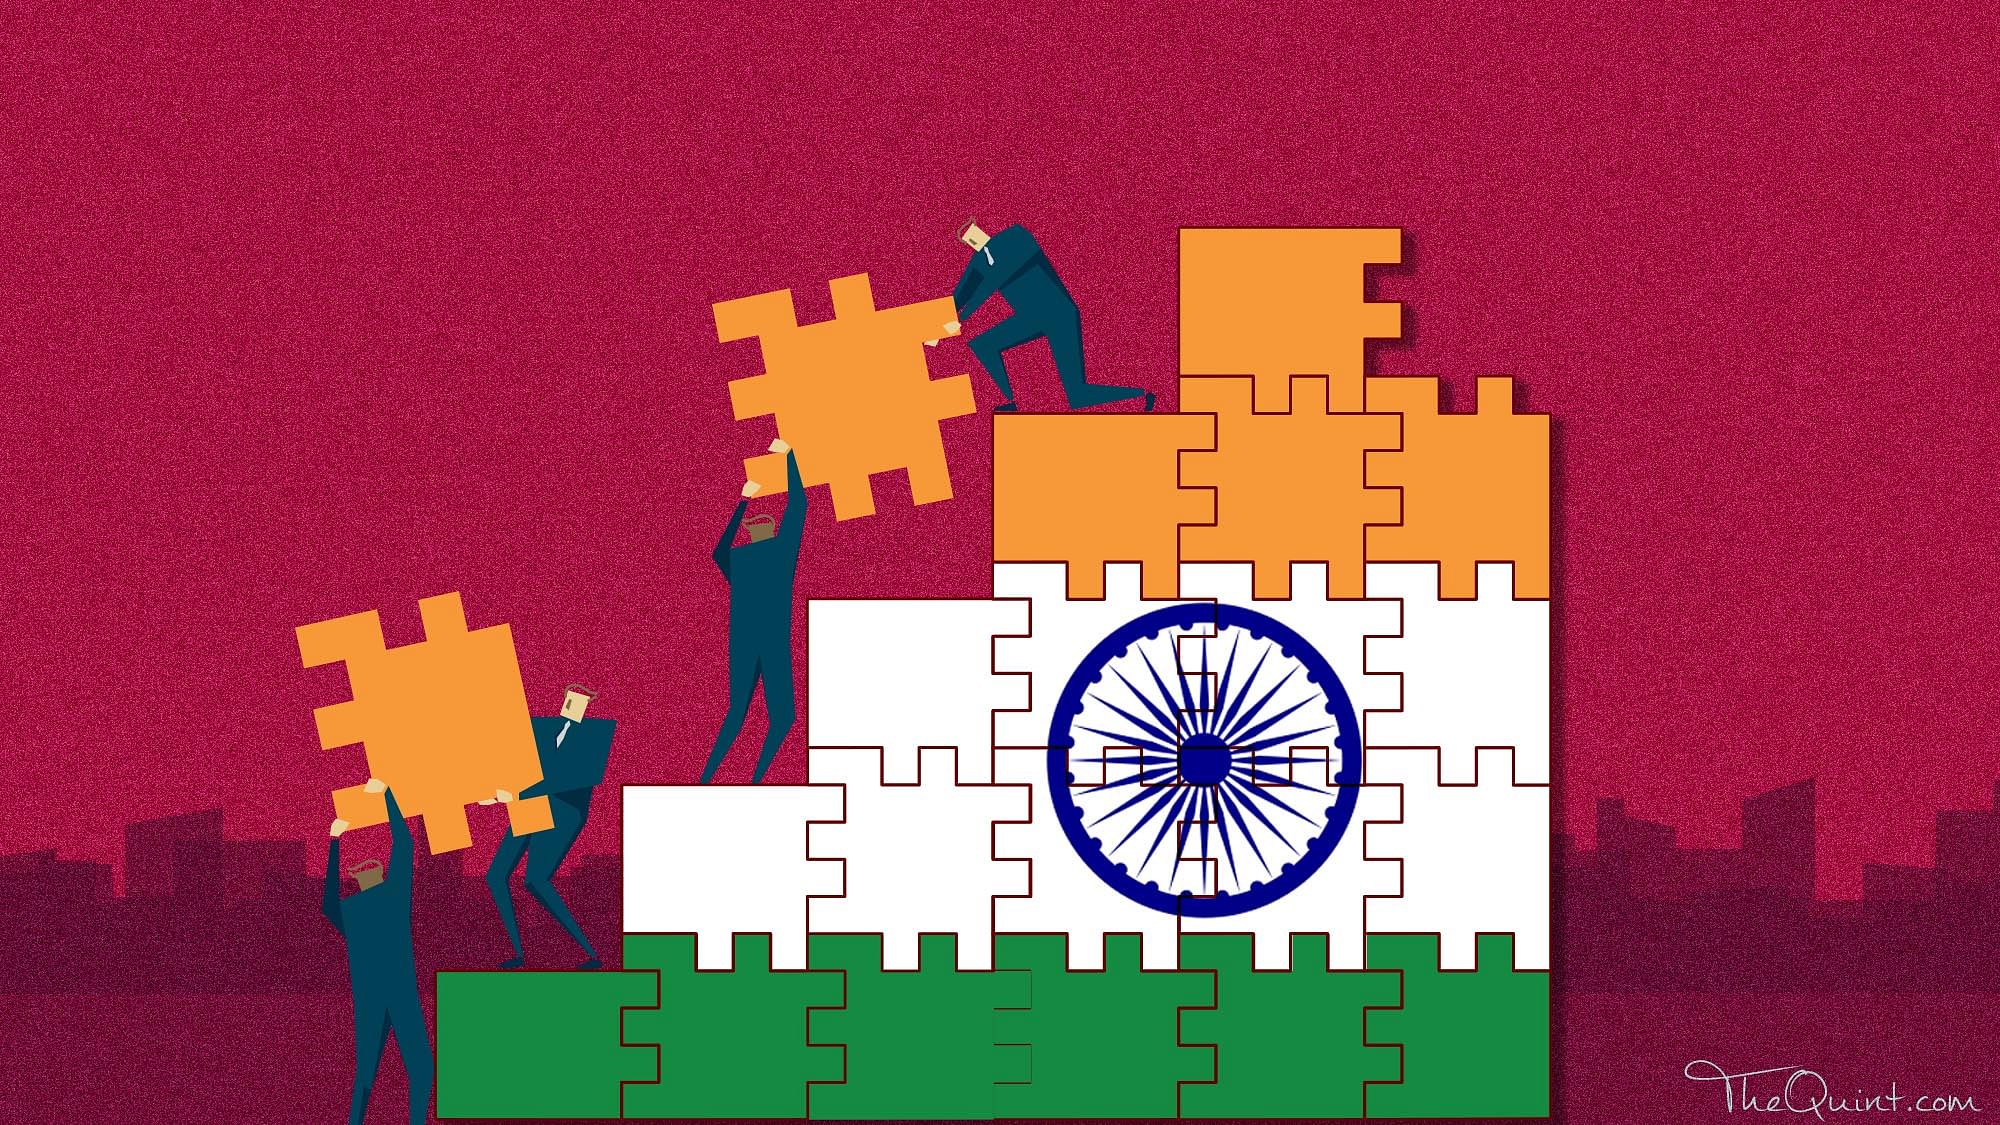 भारतीय और चीनी फौजों के बीच तनातनी जारी है